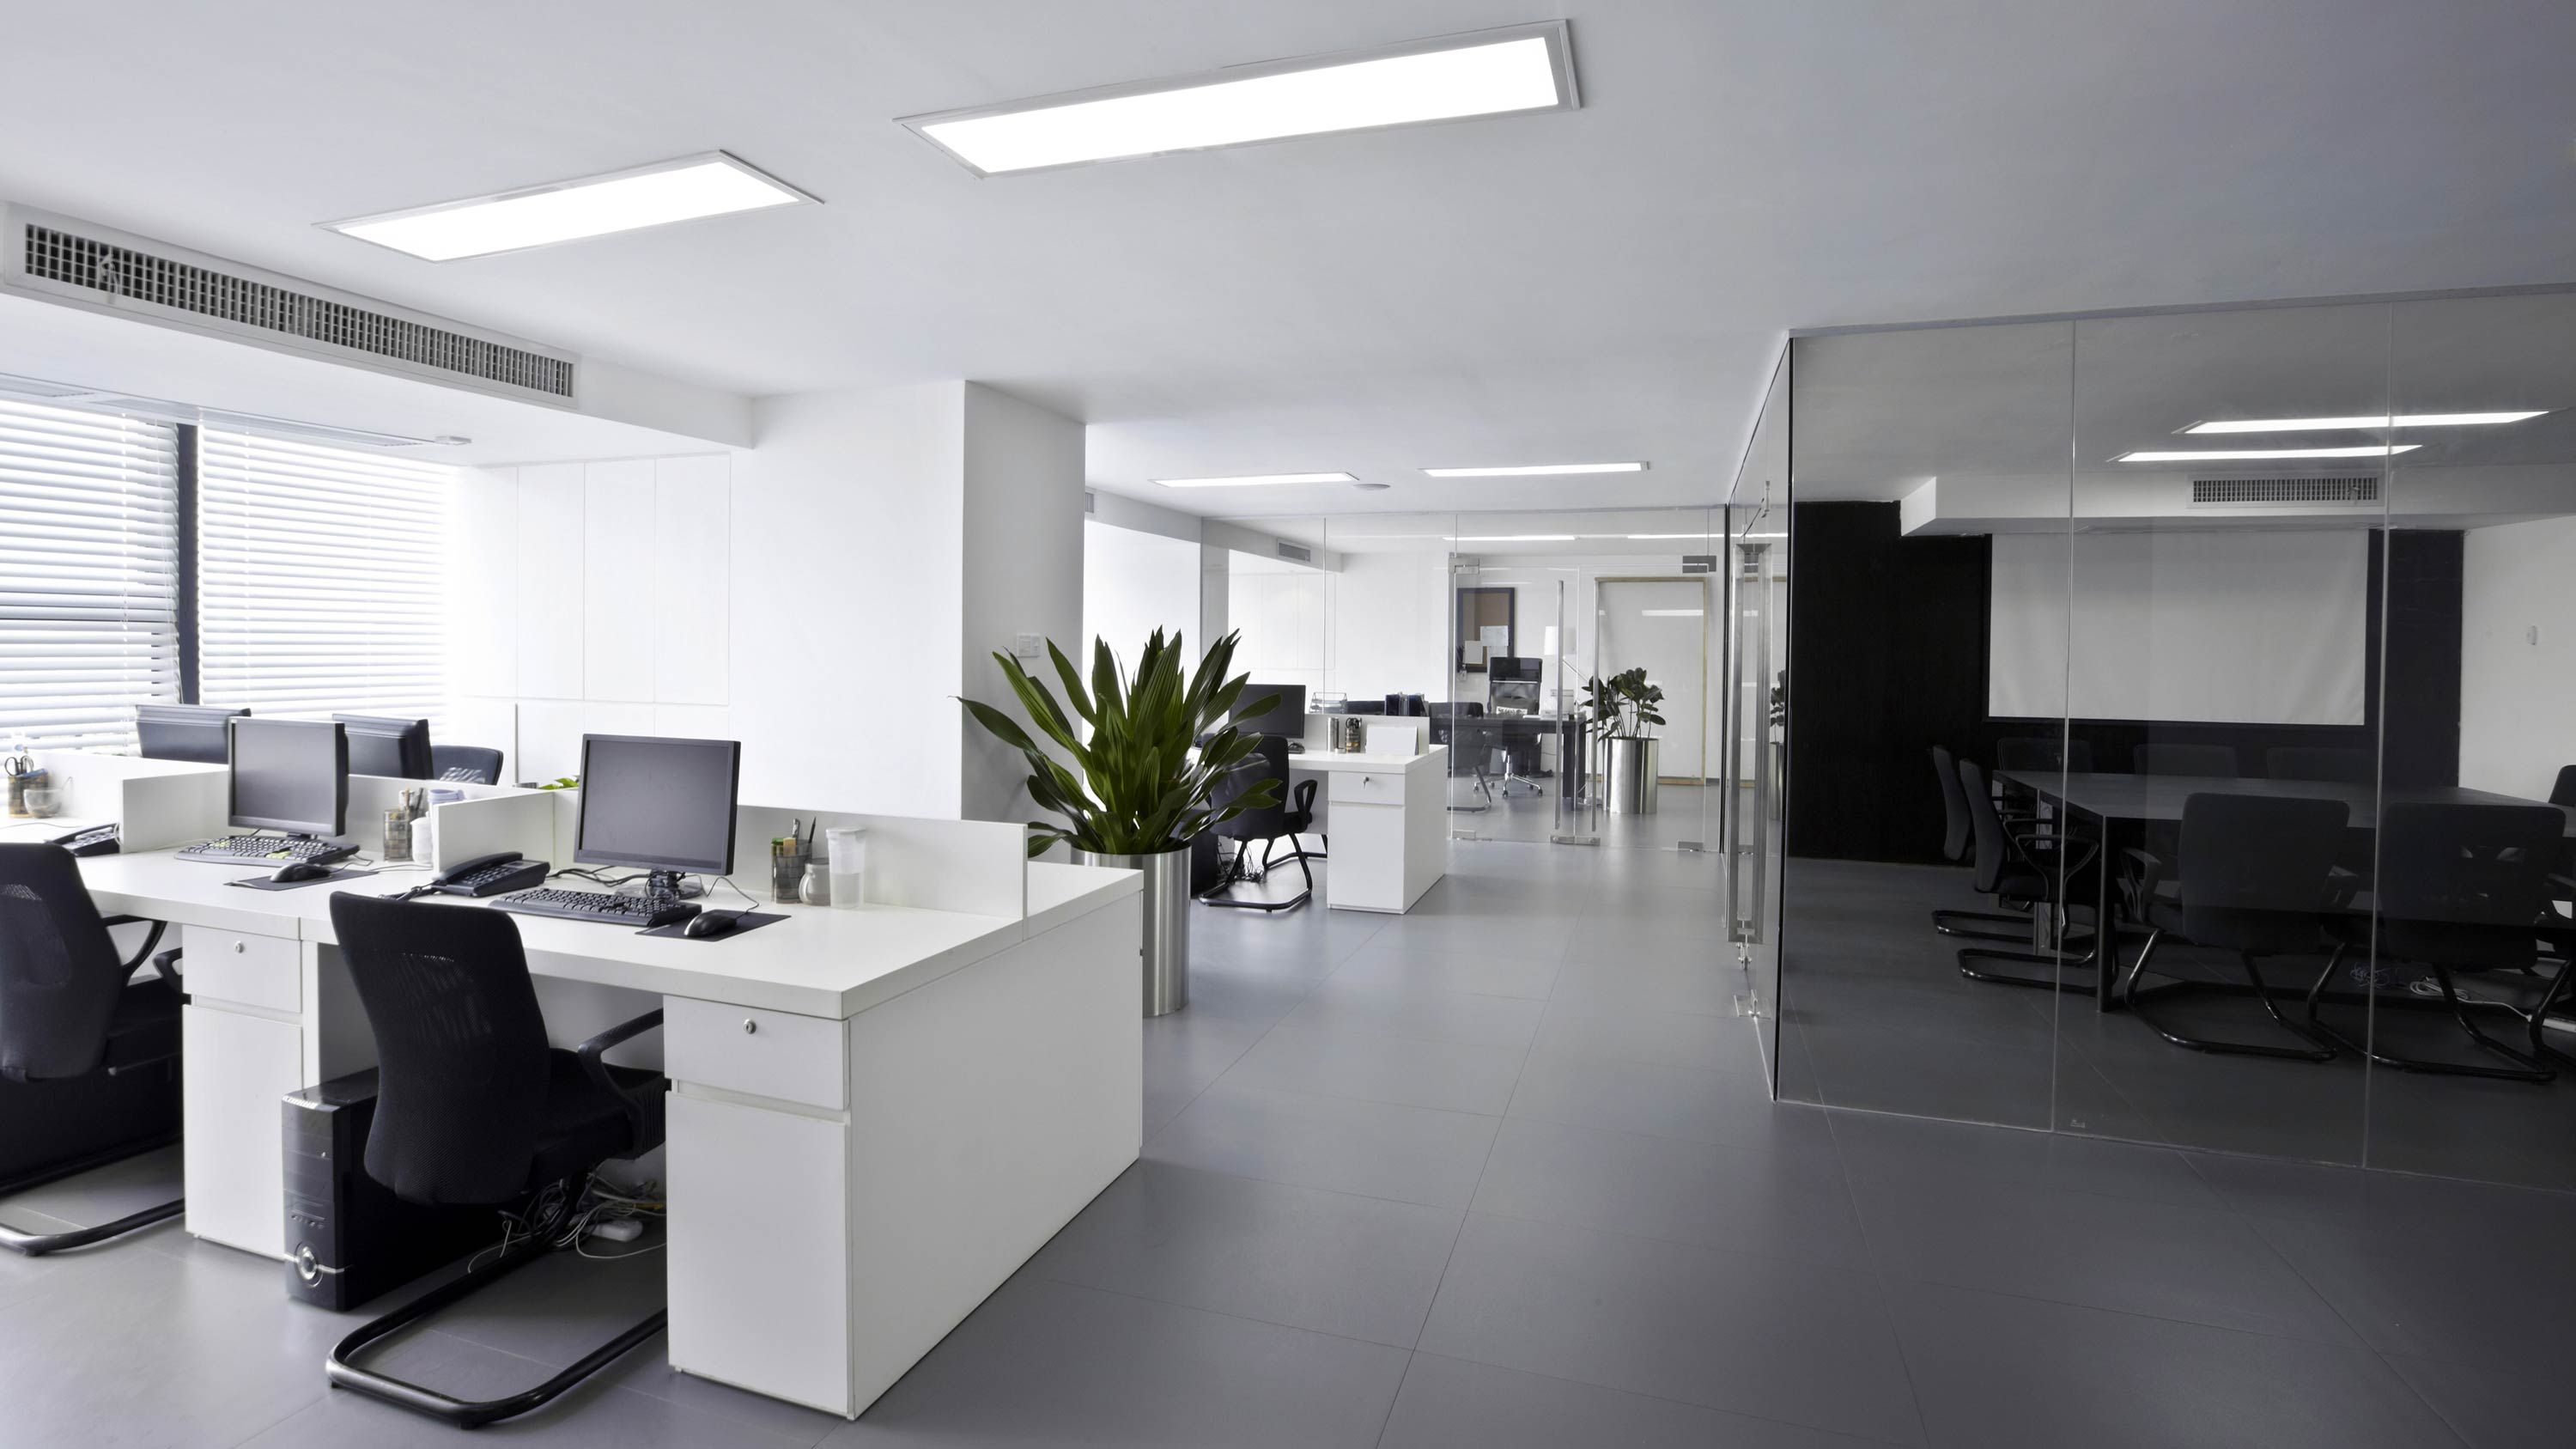 office automation, skylights, HVAC system above windows